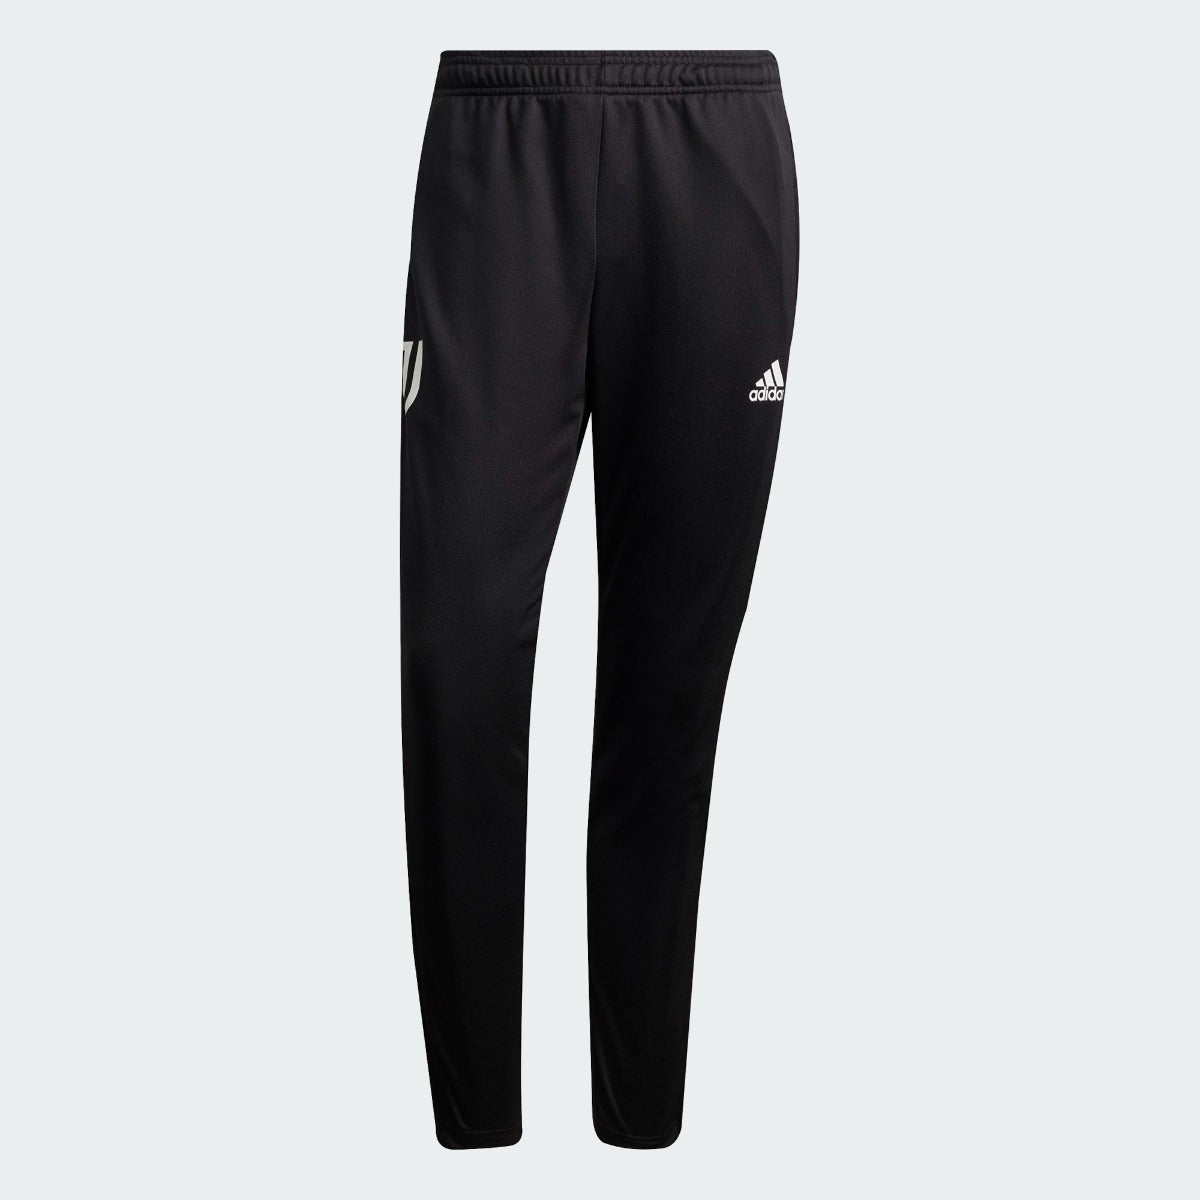 Adidas 2021-22 Juventus Training Pants - Black